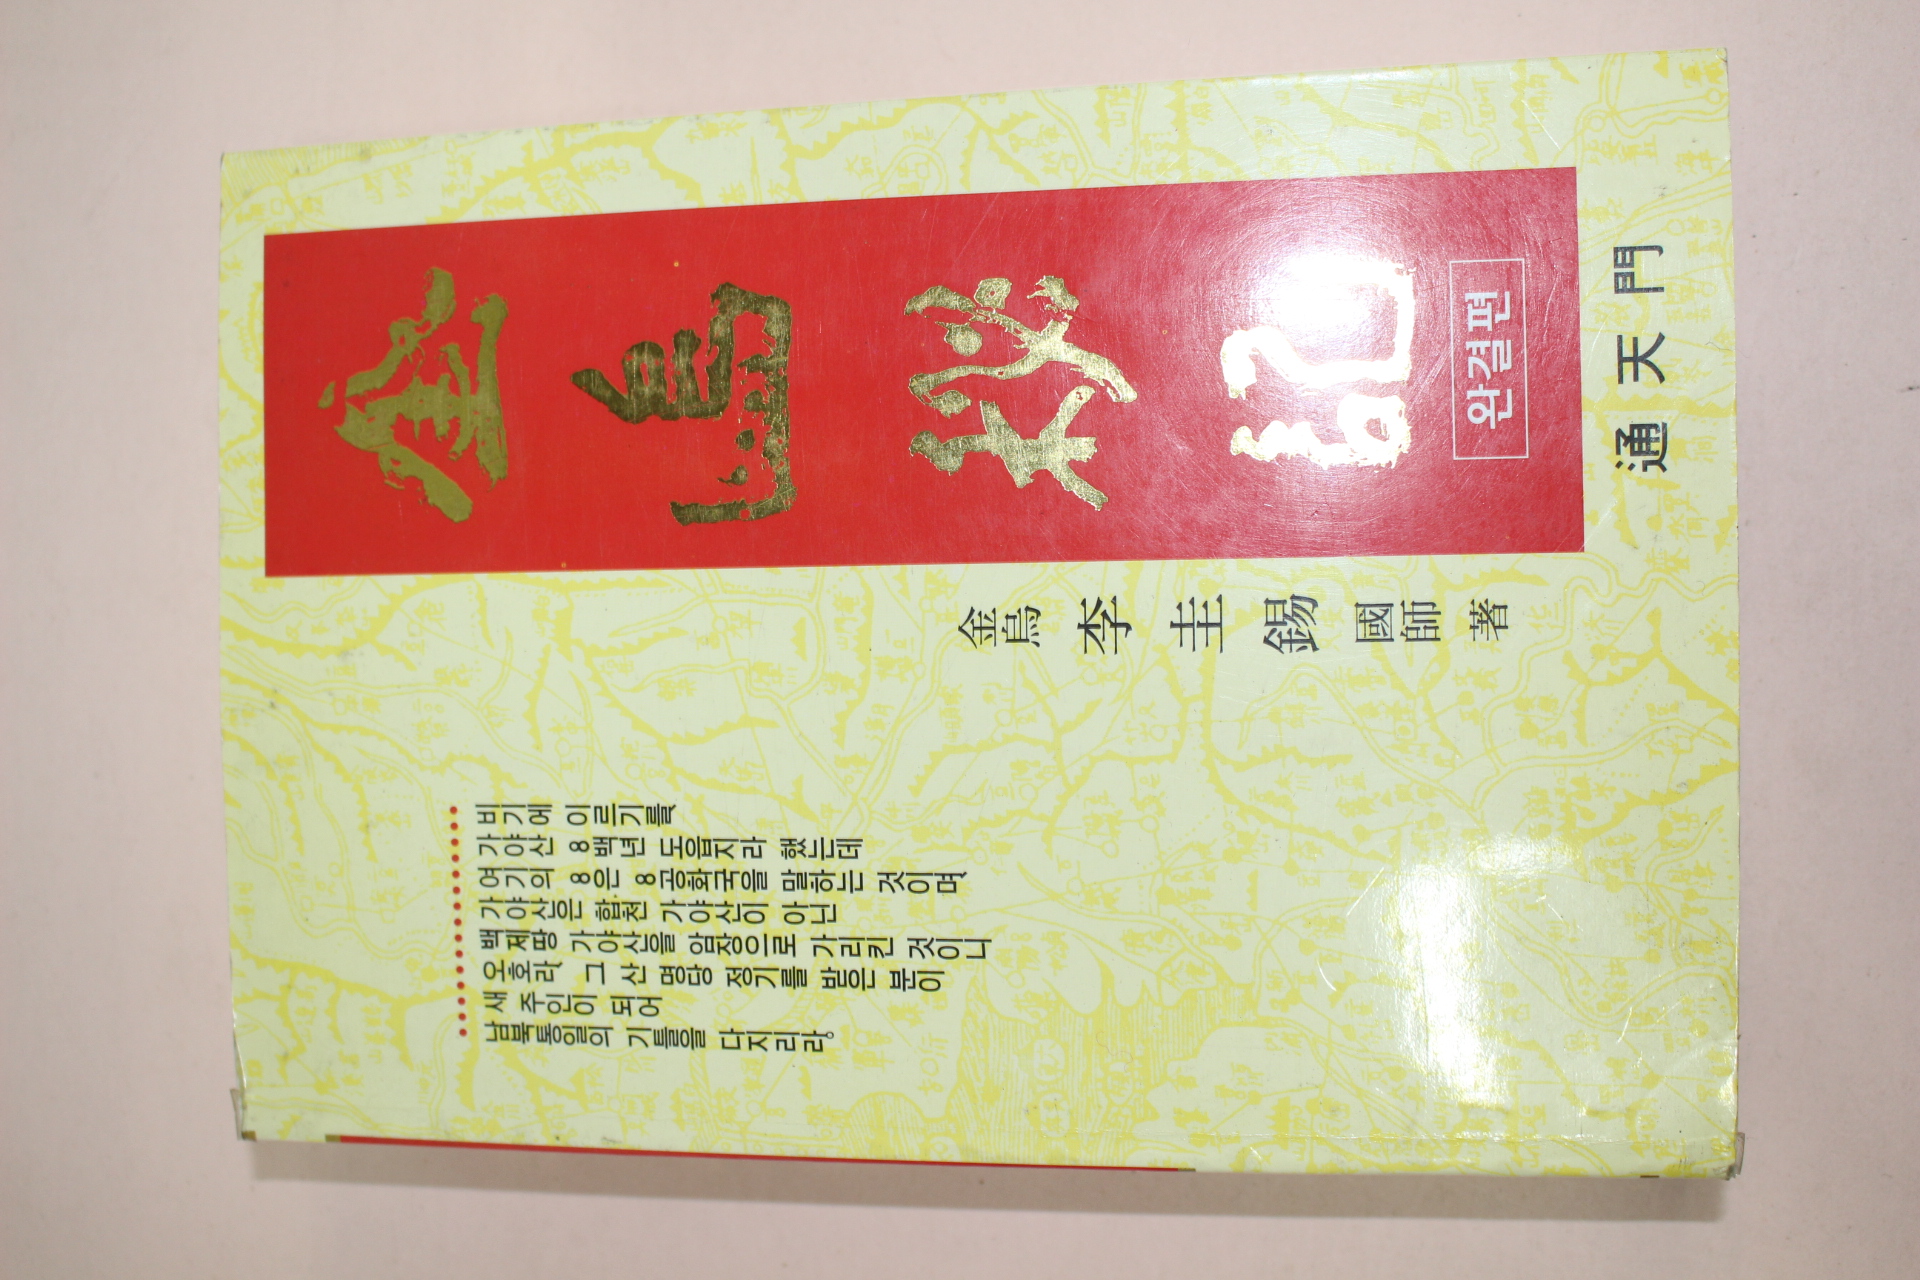 1993년 이규석(李圭錫) 금오비기(金烏秘記) 완결편